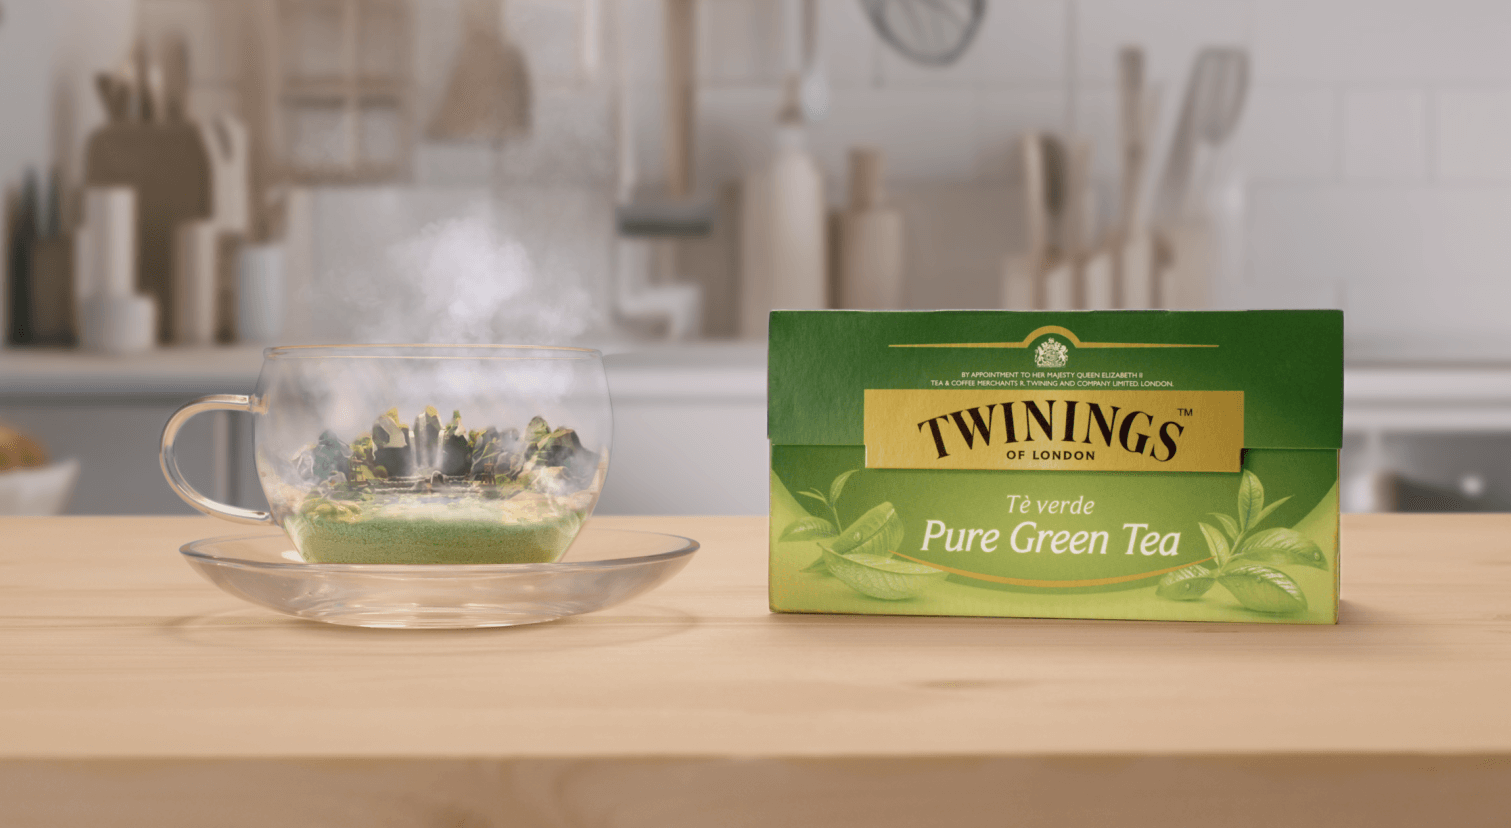 Il packaging dei "Pure Green Tea" Twinings accanto ad un tè in infusione. Creato da Caffeina per Twinings.